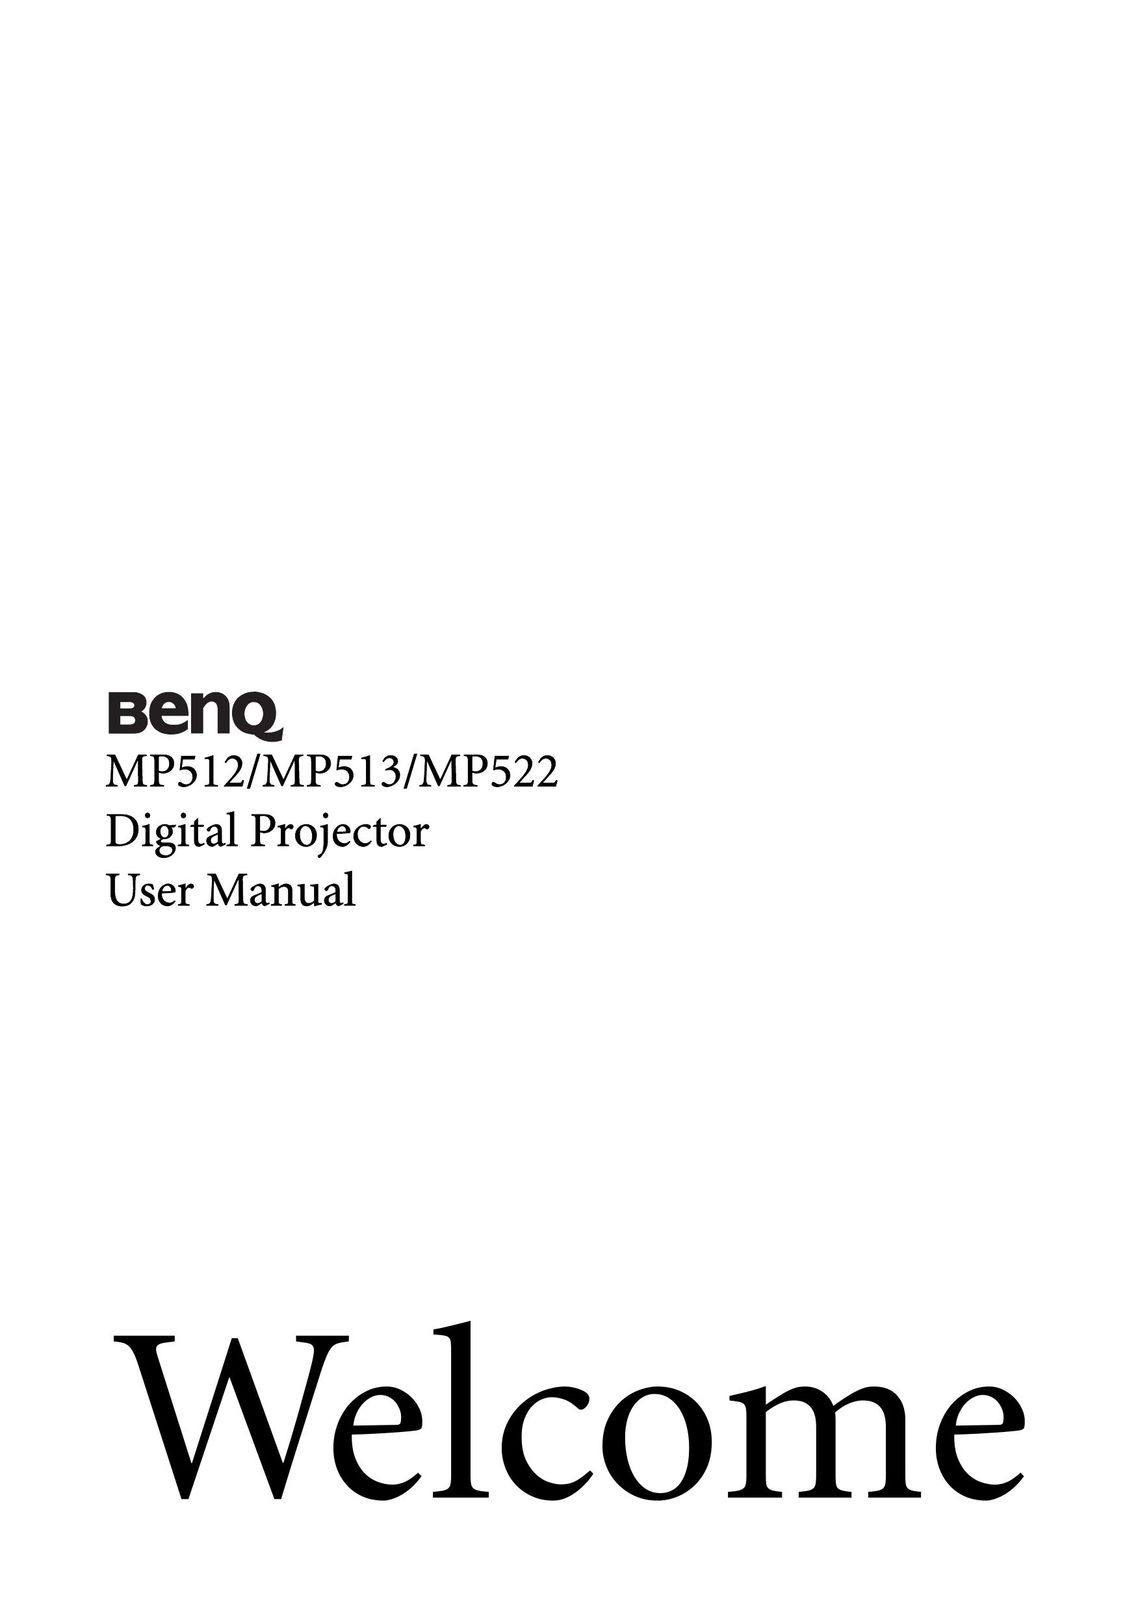 BenQ MP522 Projector User Manual